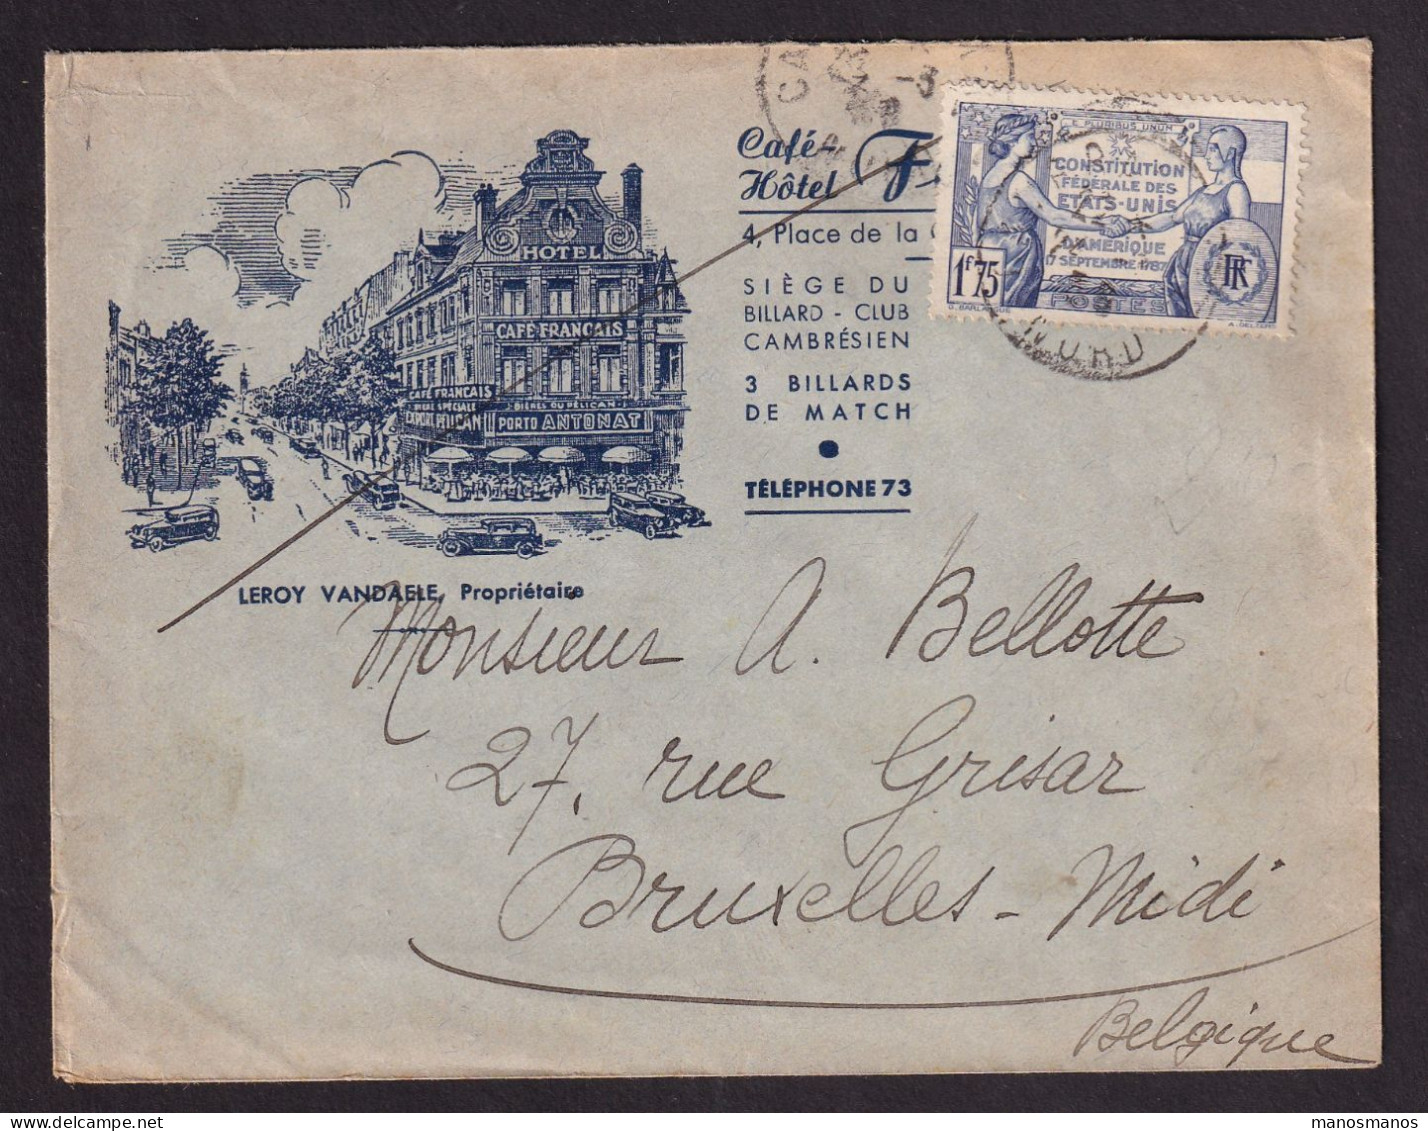 DDGG 039 - Enveloppe Illustrée "Hotel Français" TP 357 CAMBRAY 1938 Vers Bruxelles - Storia Postale